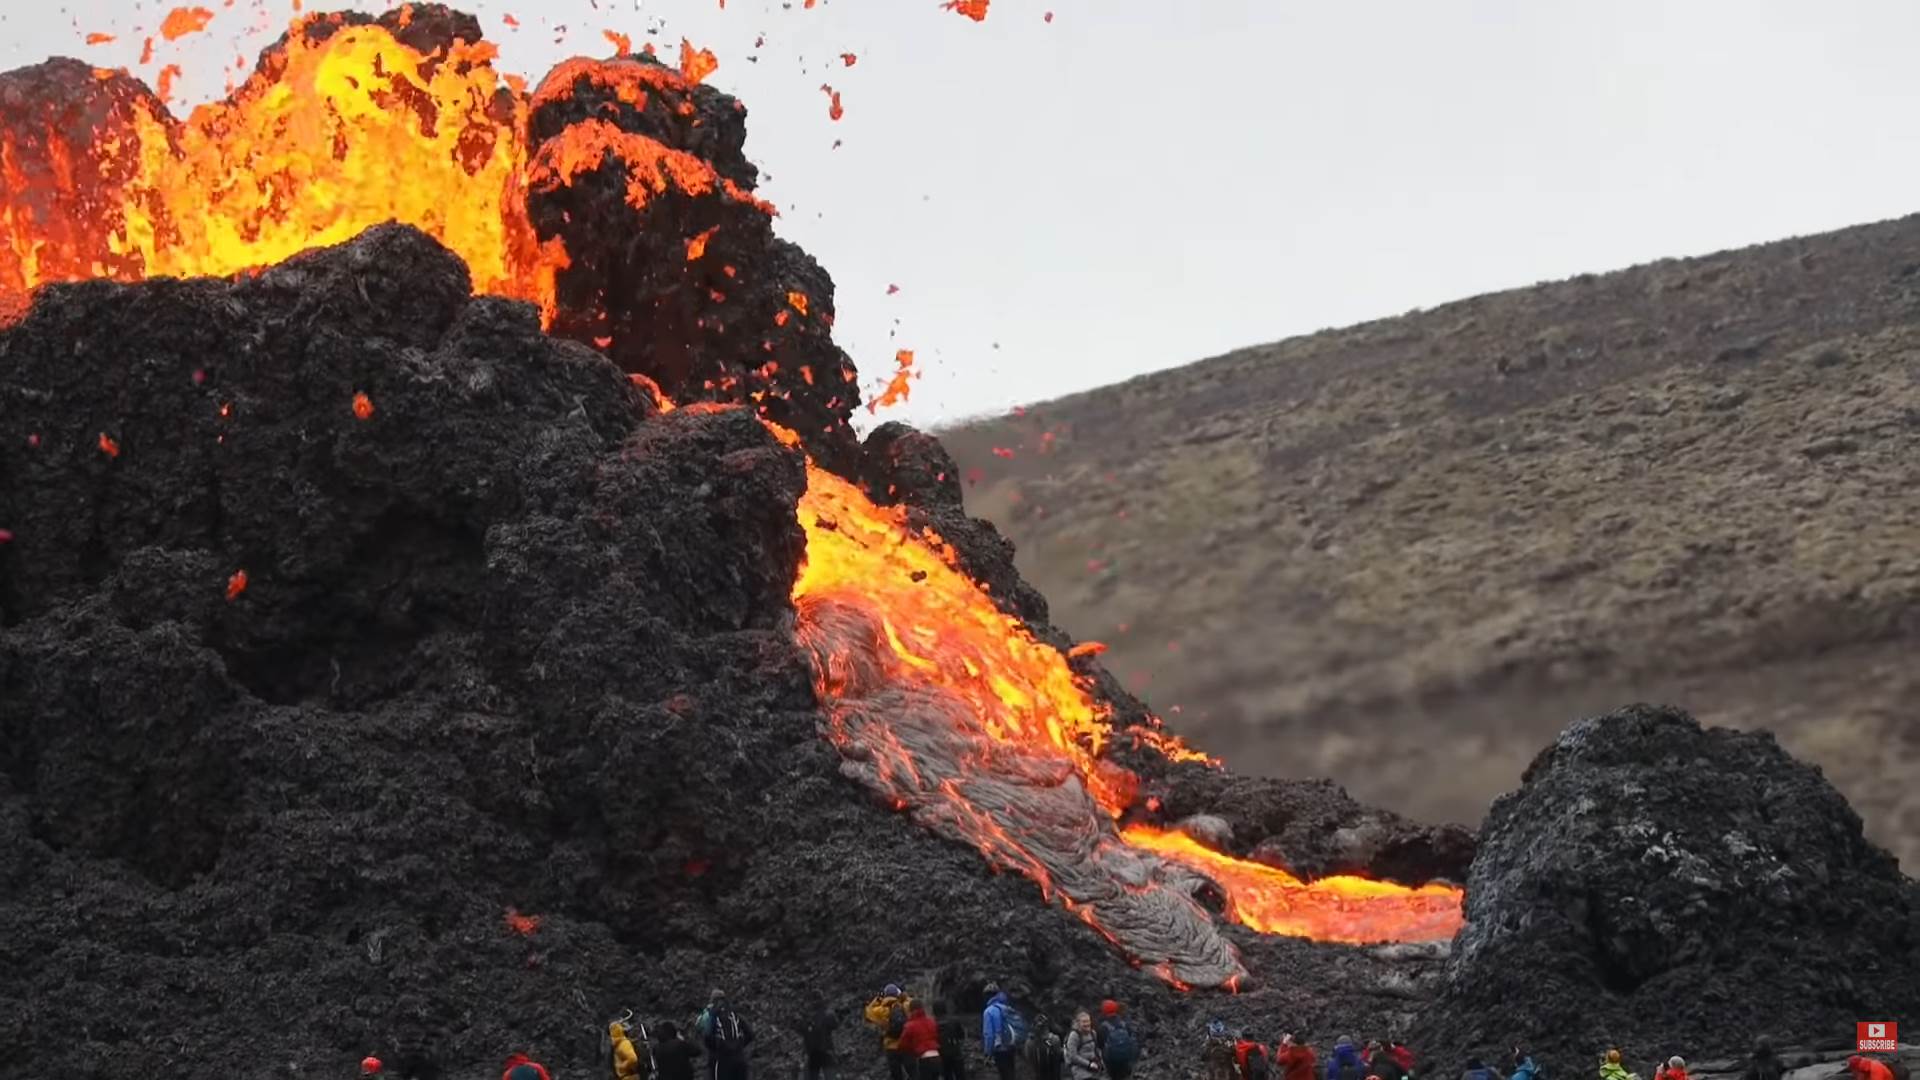  "Najislandskija" stvar ikada: Vulkan, lava, dronovi i odbojka 